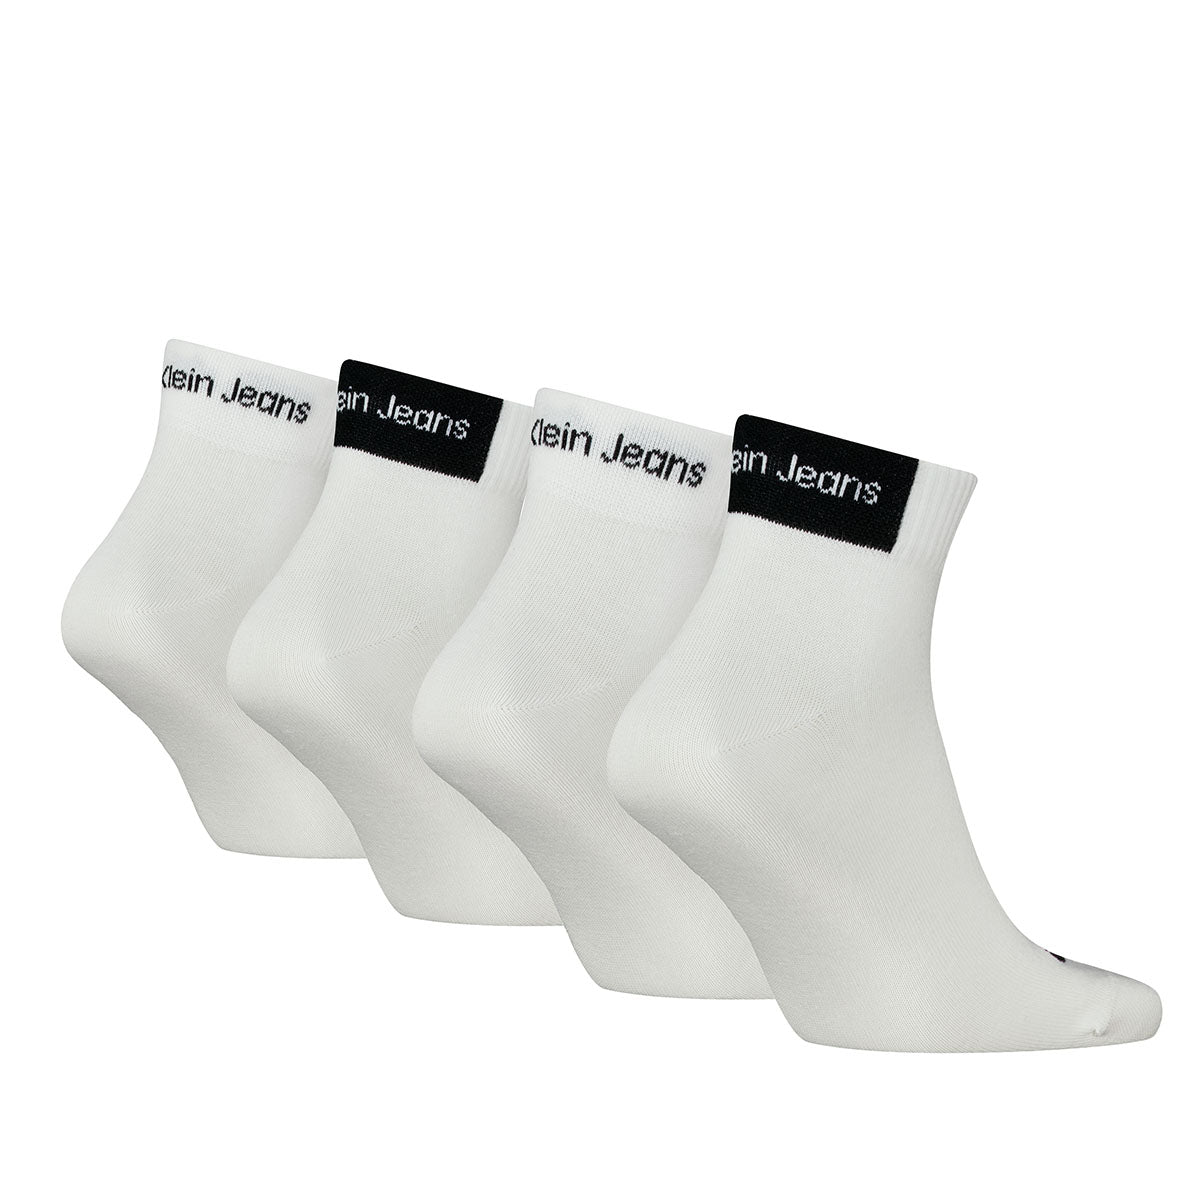 Calvin Klein Jeans Men's Quarter Socks 4 pack